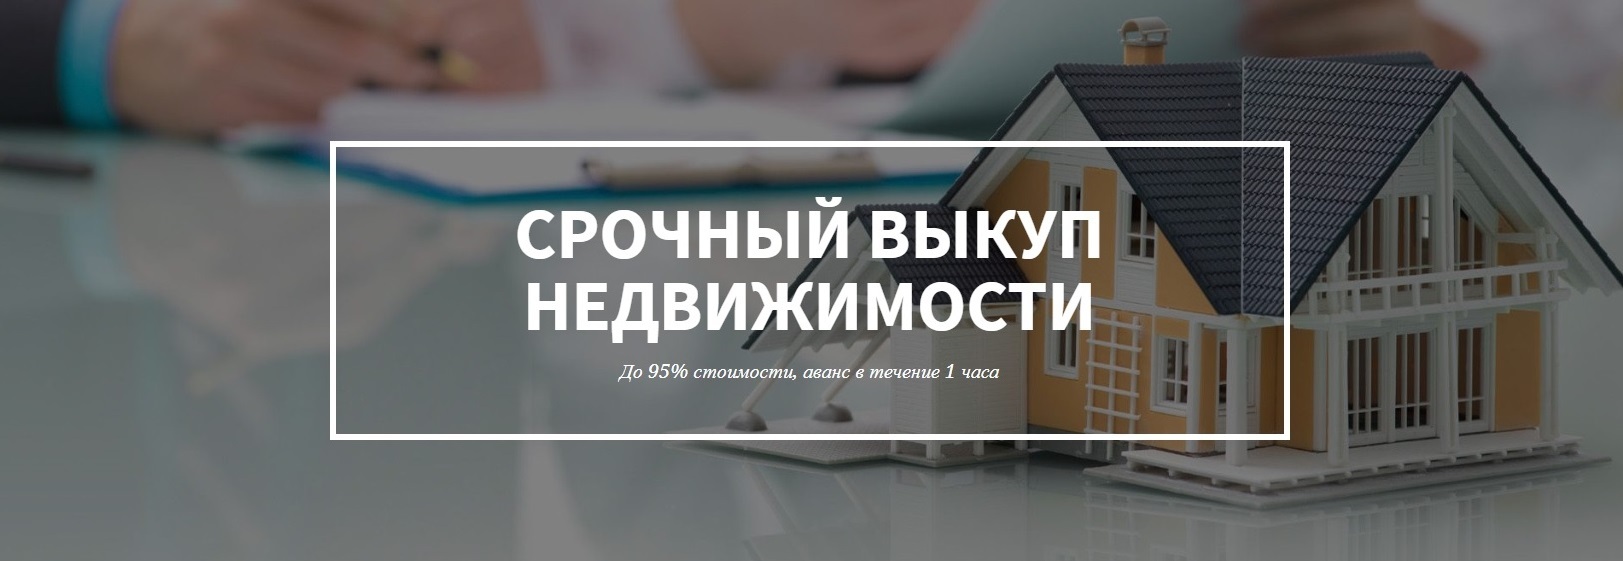 дизайн картинка выкупа недвижимости в Калининграде